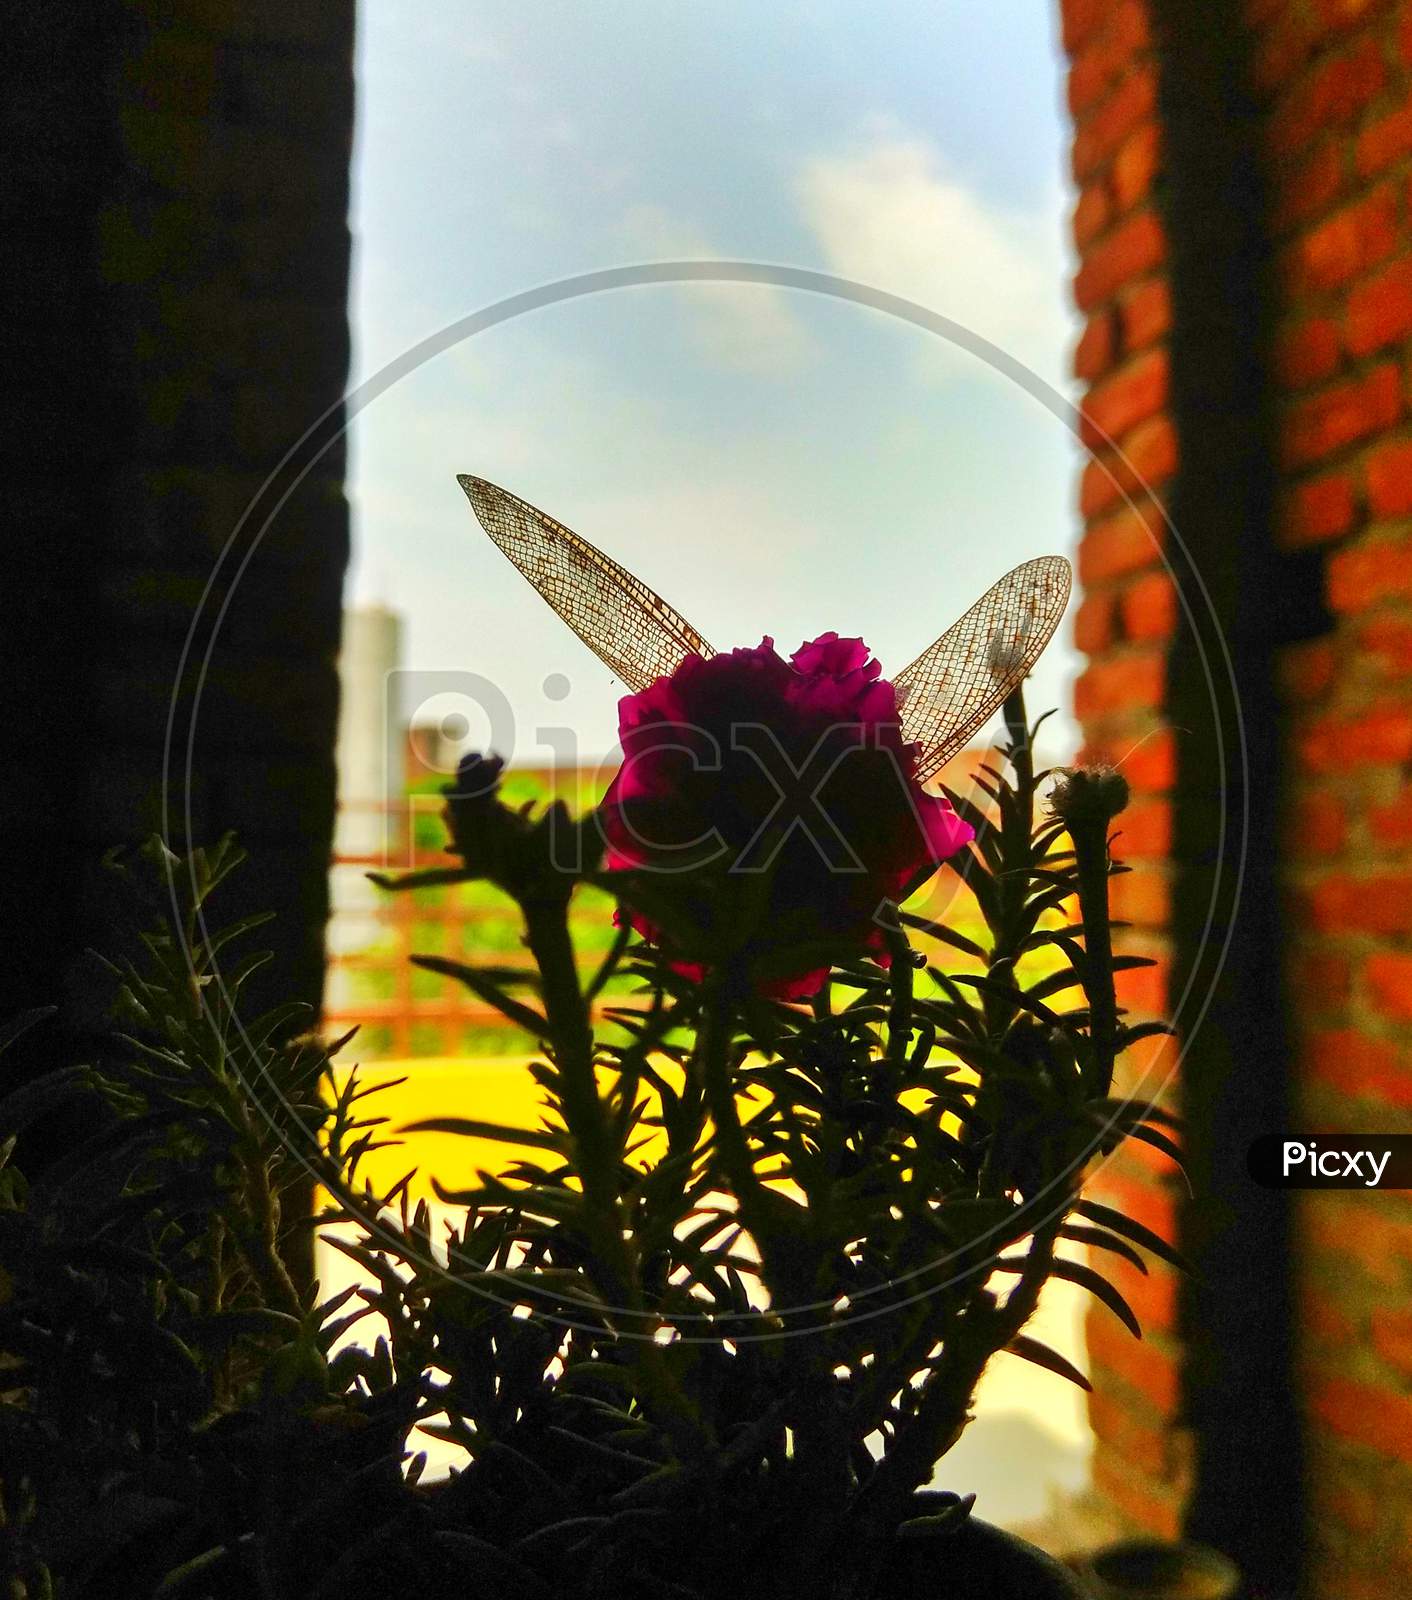 ×Remove Silhouette×Remove Petal×Remove Plant×Remove Flower×Remove Wildflower×Remove Window×Remove Magenta×Remove Butterfly×Remove Glass×Remove